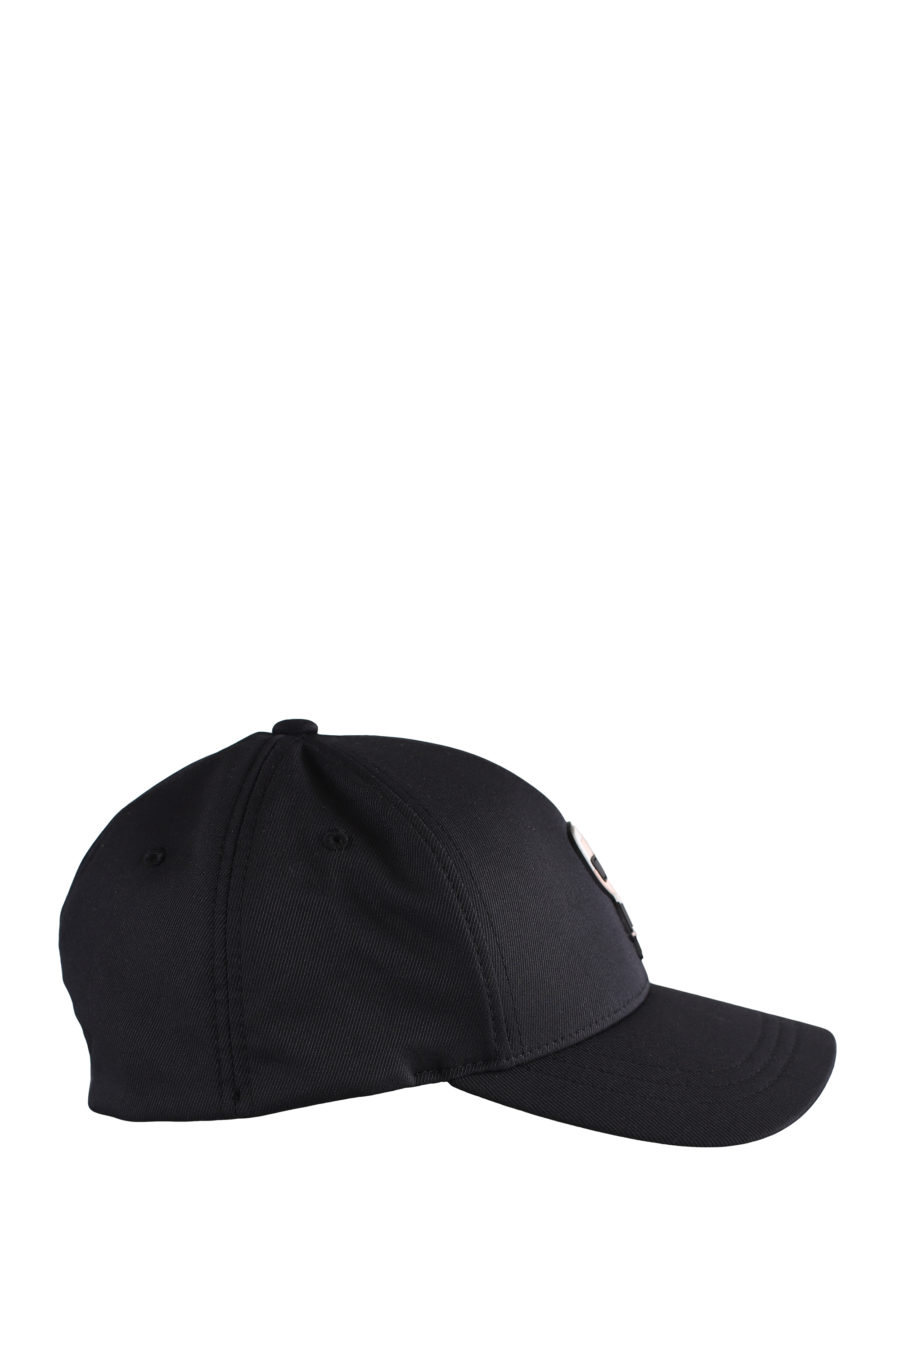 Gorra negra con logotipo engomado "Karl" - IMG 9592